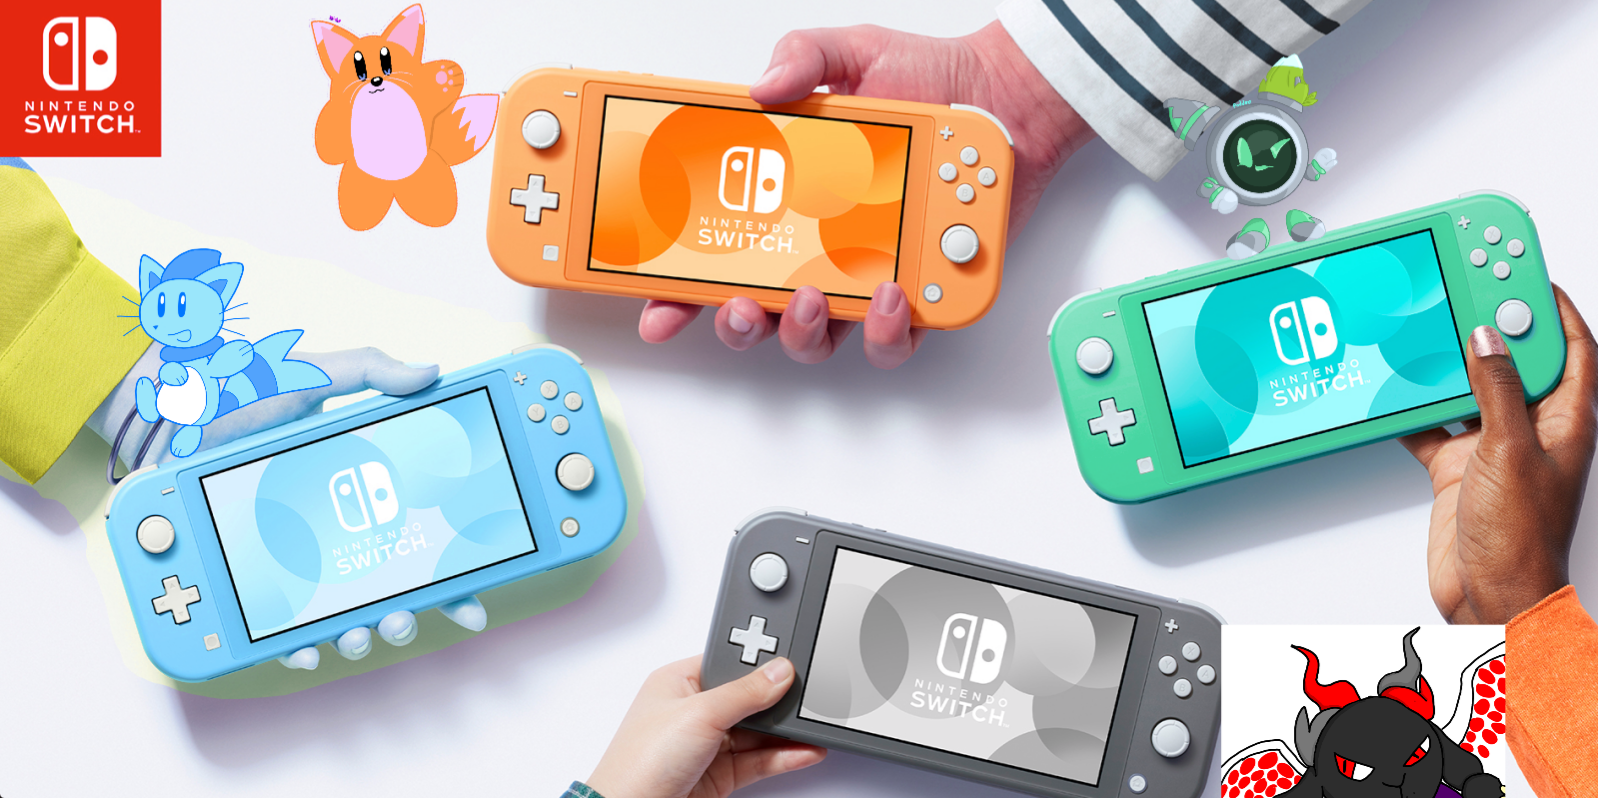 Nintendo Switch Lite es la más reciente de las adaptaciones de la Nintendo Switch original, donde se ha apostado por una consola exclusivamente portátil, pero con todos los beneficios de la tradicional. Una de sus características principales son la variedad de colores y hoy le dan la bienvenida a un nuevo color. 